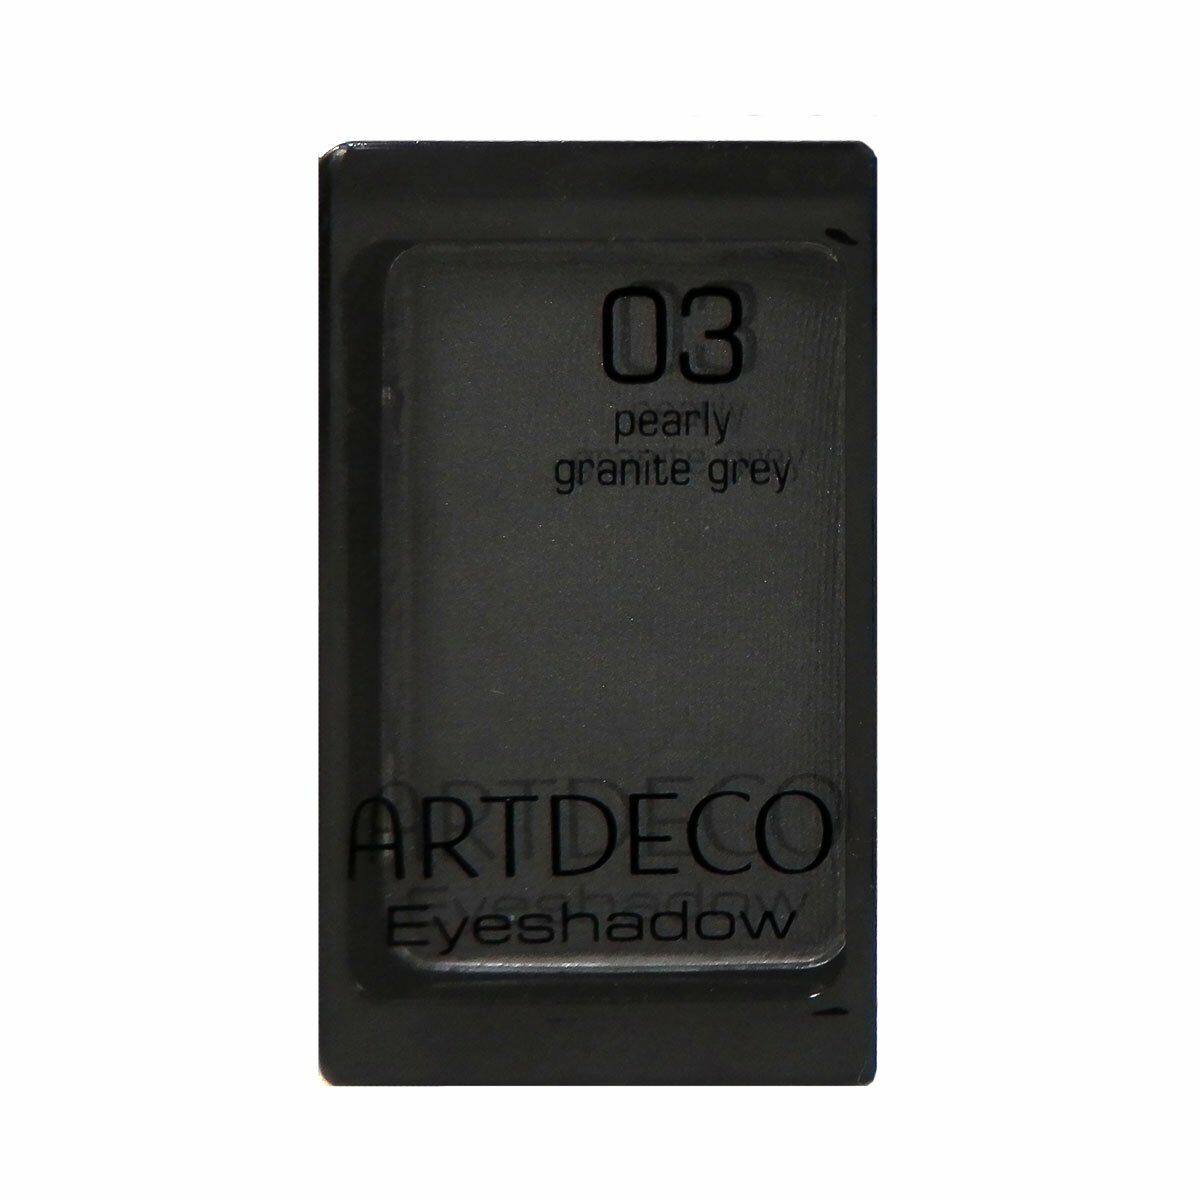 Eyeshadow Artdeco EYESHADOW PEARL Nº 03 Pearly granite grey 0,8 g